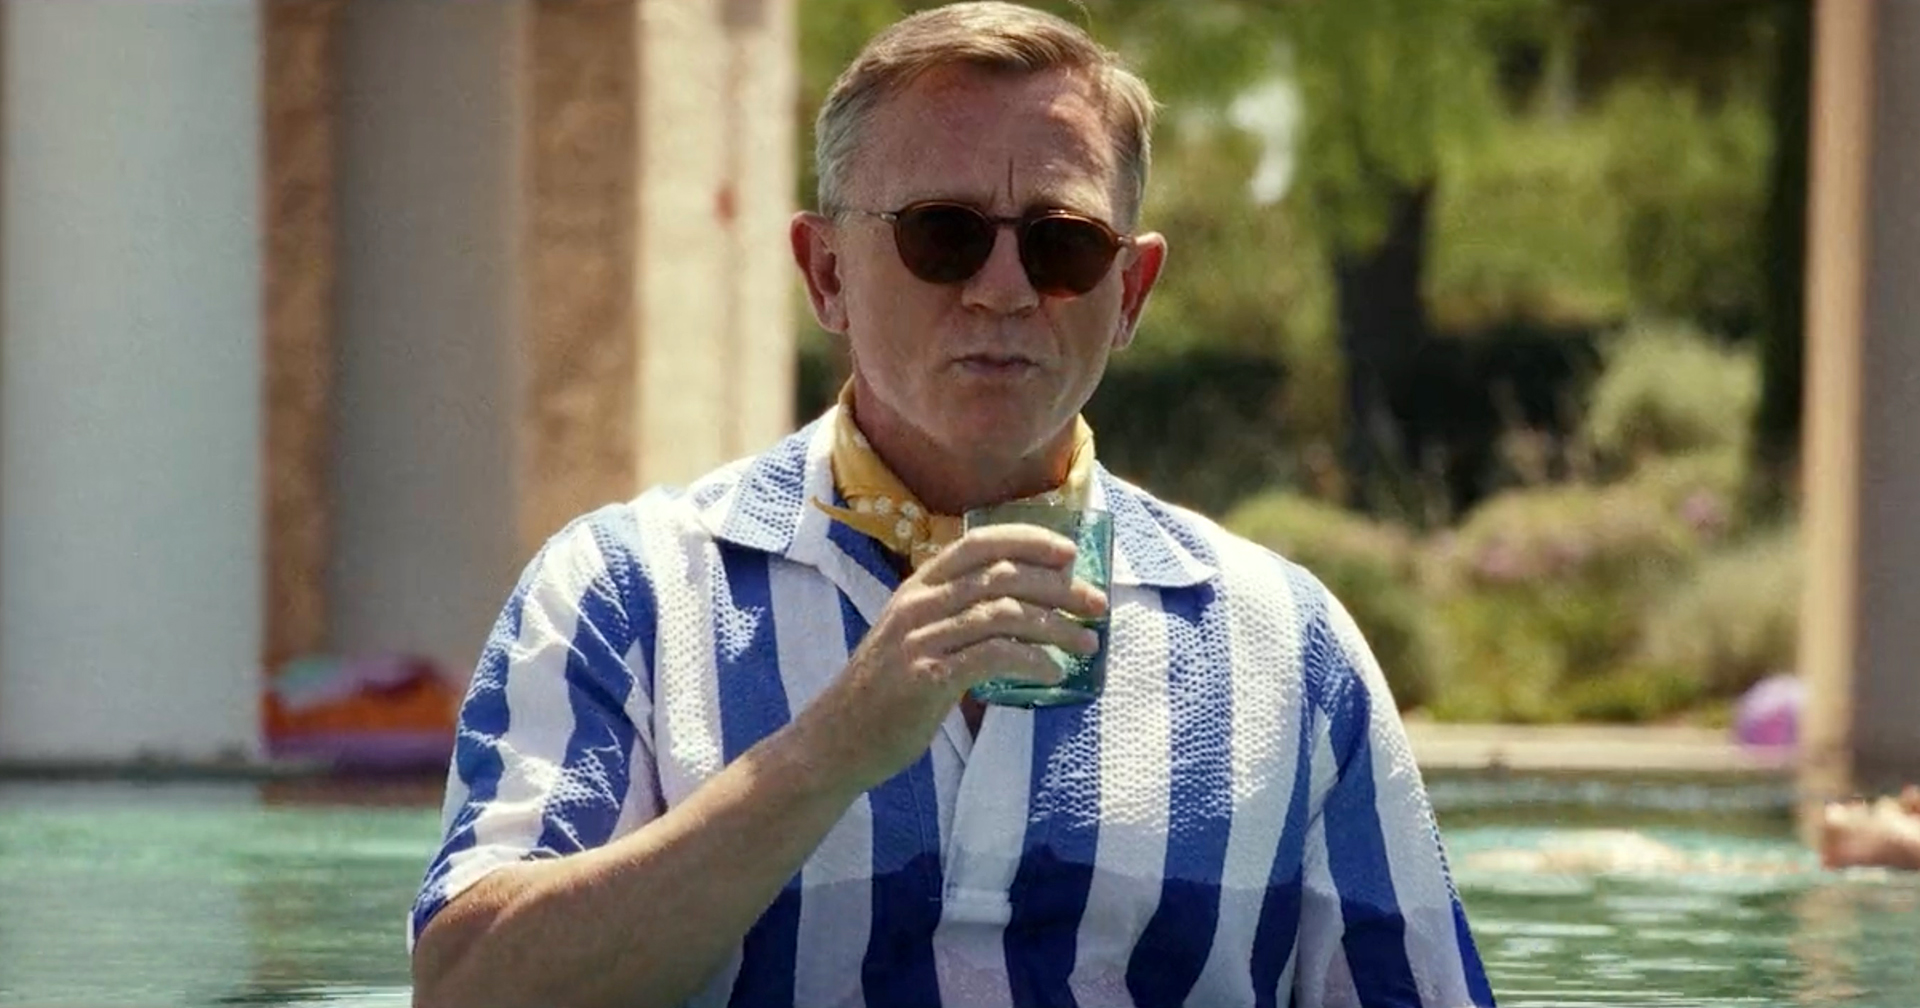 ผู้กำกับยืนยัน : ตัวละคร Benoit Blanc ของ Daniel Craig ใน ‘Glass Onion’ เป็นเกย์